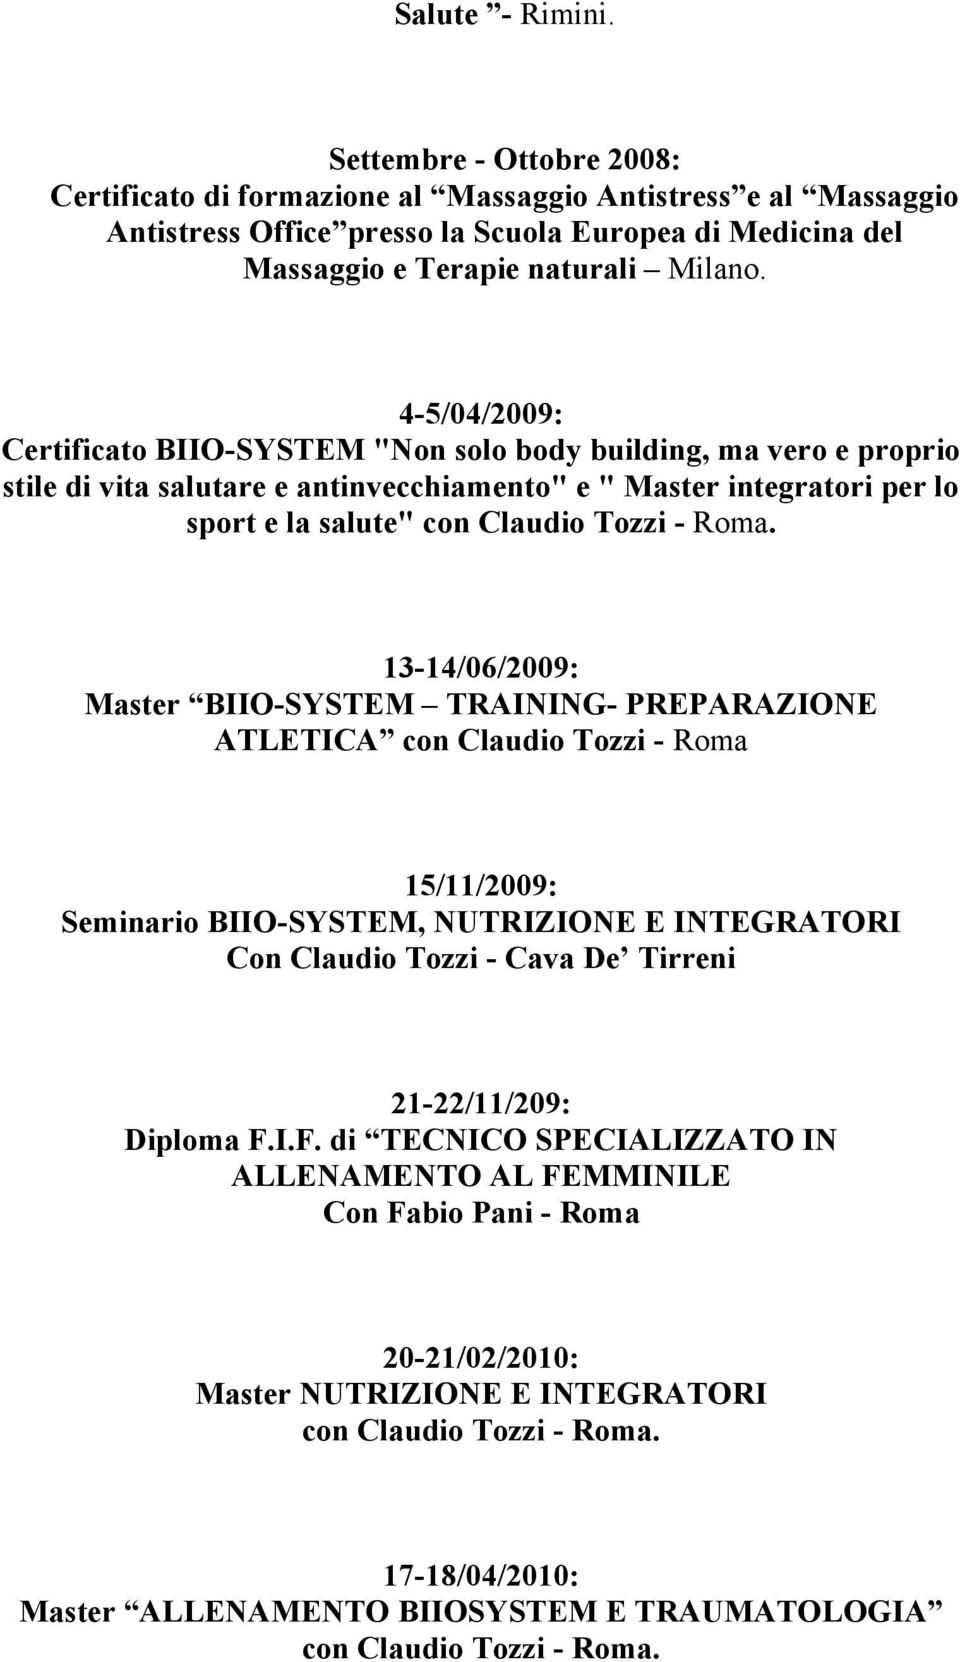 4-5/04/2009: Certificato BIIO-SYSTEM "Non solo body building, ma vero e proprio stile di vita salutare e antinvecchiamento" e " Master integratori per lo sport e la salute" con Claudio Tozzi - Roma.